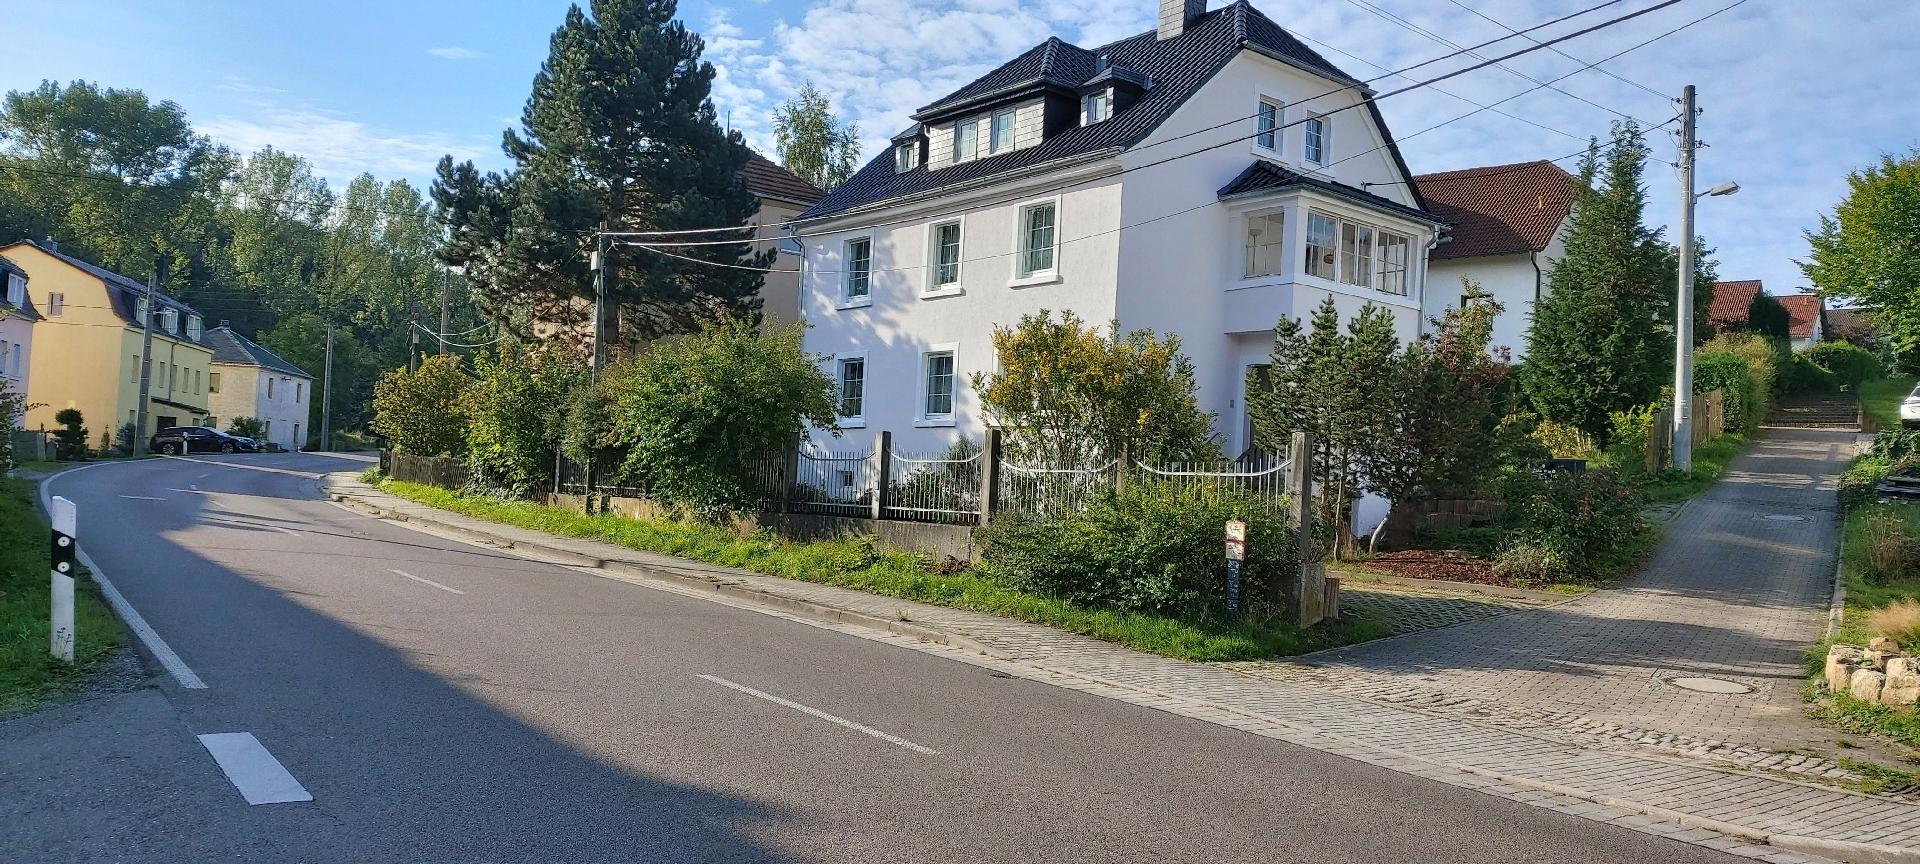 Wohnung in Hänichen mit Garten Ferienwohnung in Sachsen